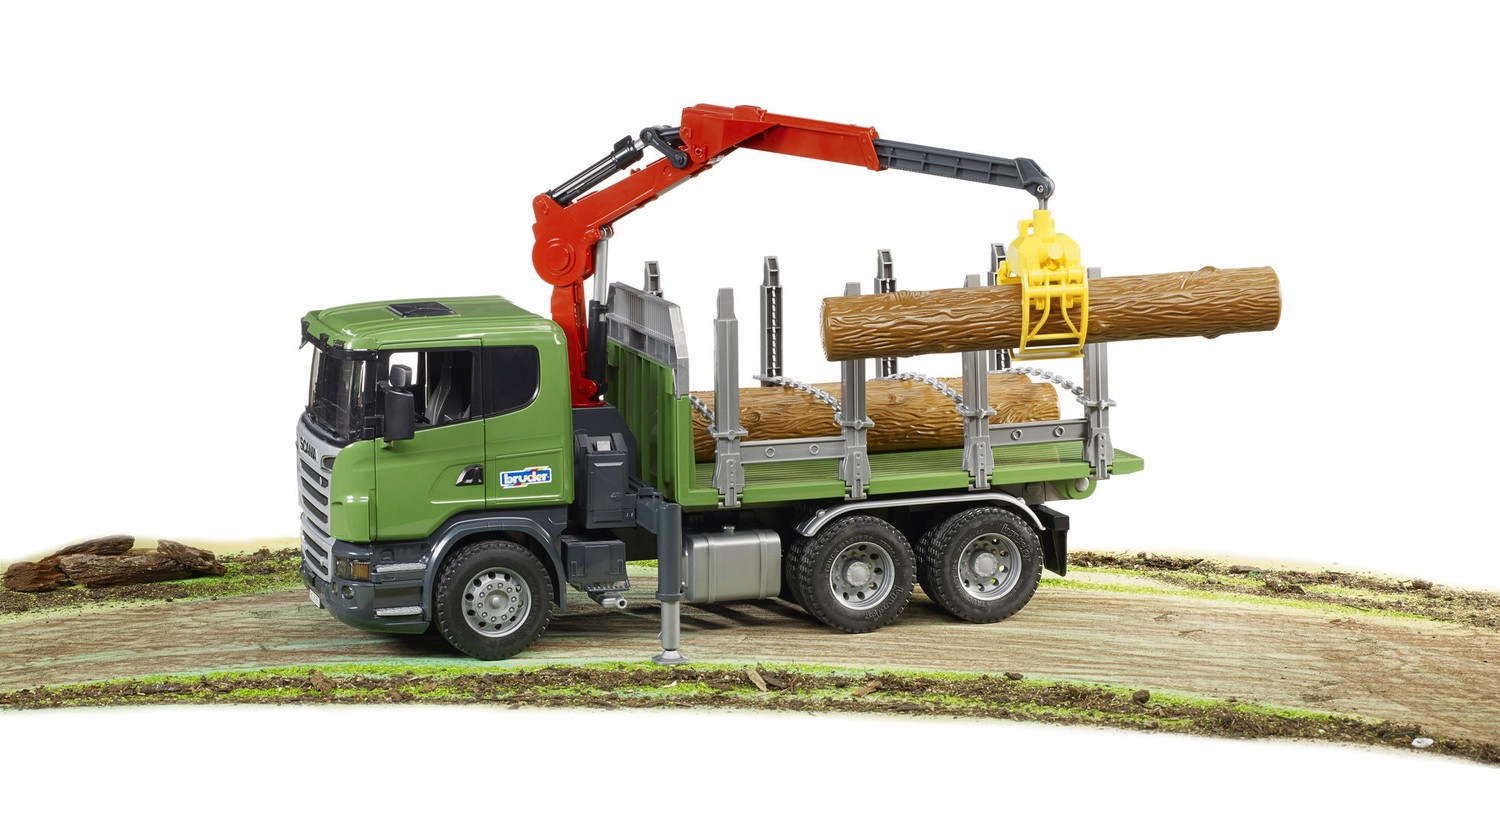 Bruder 03524 Scale 1:16 Scania R-Series Timber Tipper Truck Crane Grab Trunks